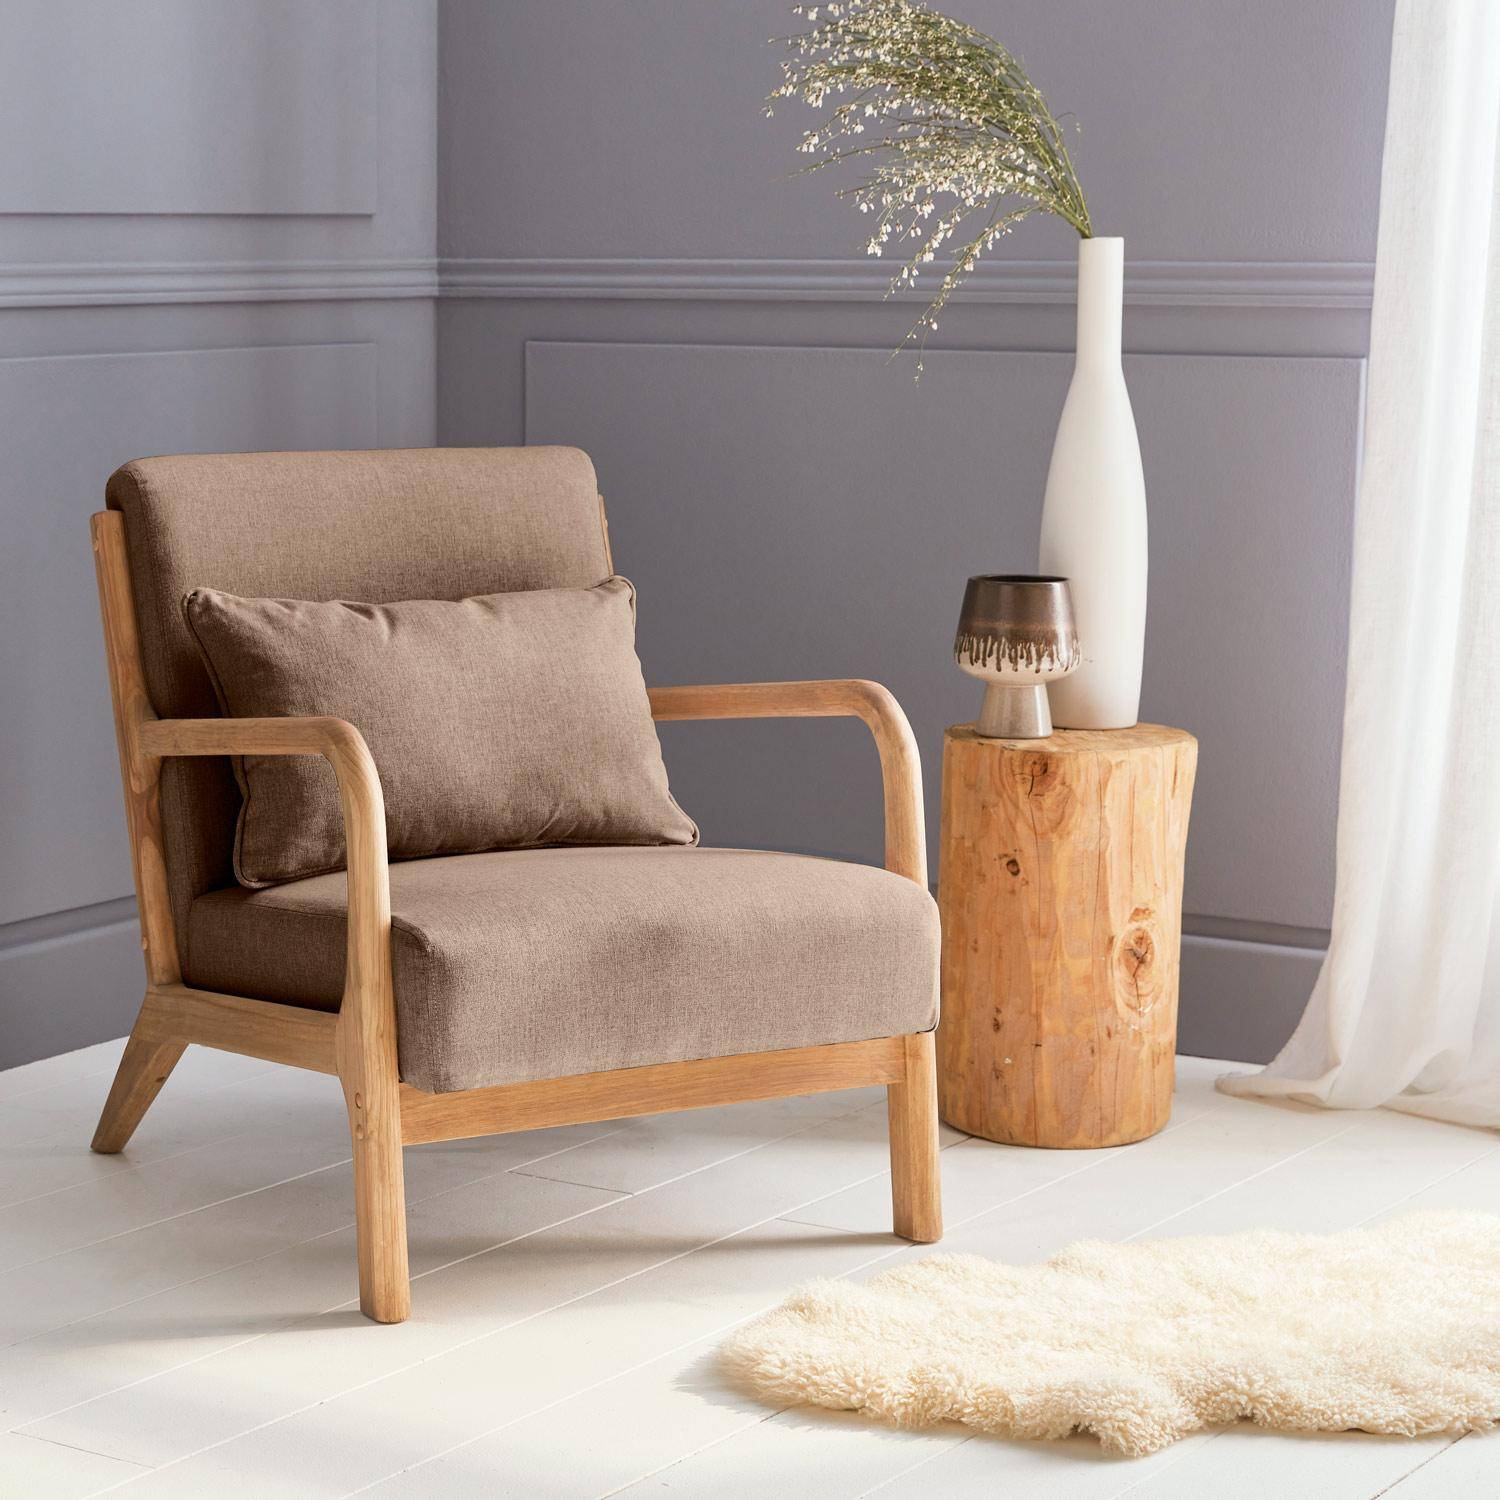 Fauteuil design marron en bois et tissu, 1 place droit fixe, pieds compas scandinave, structure en bois solide, assise confortable  Photo1